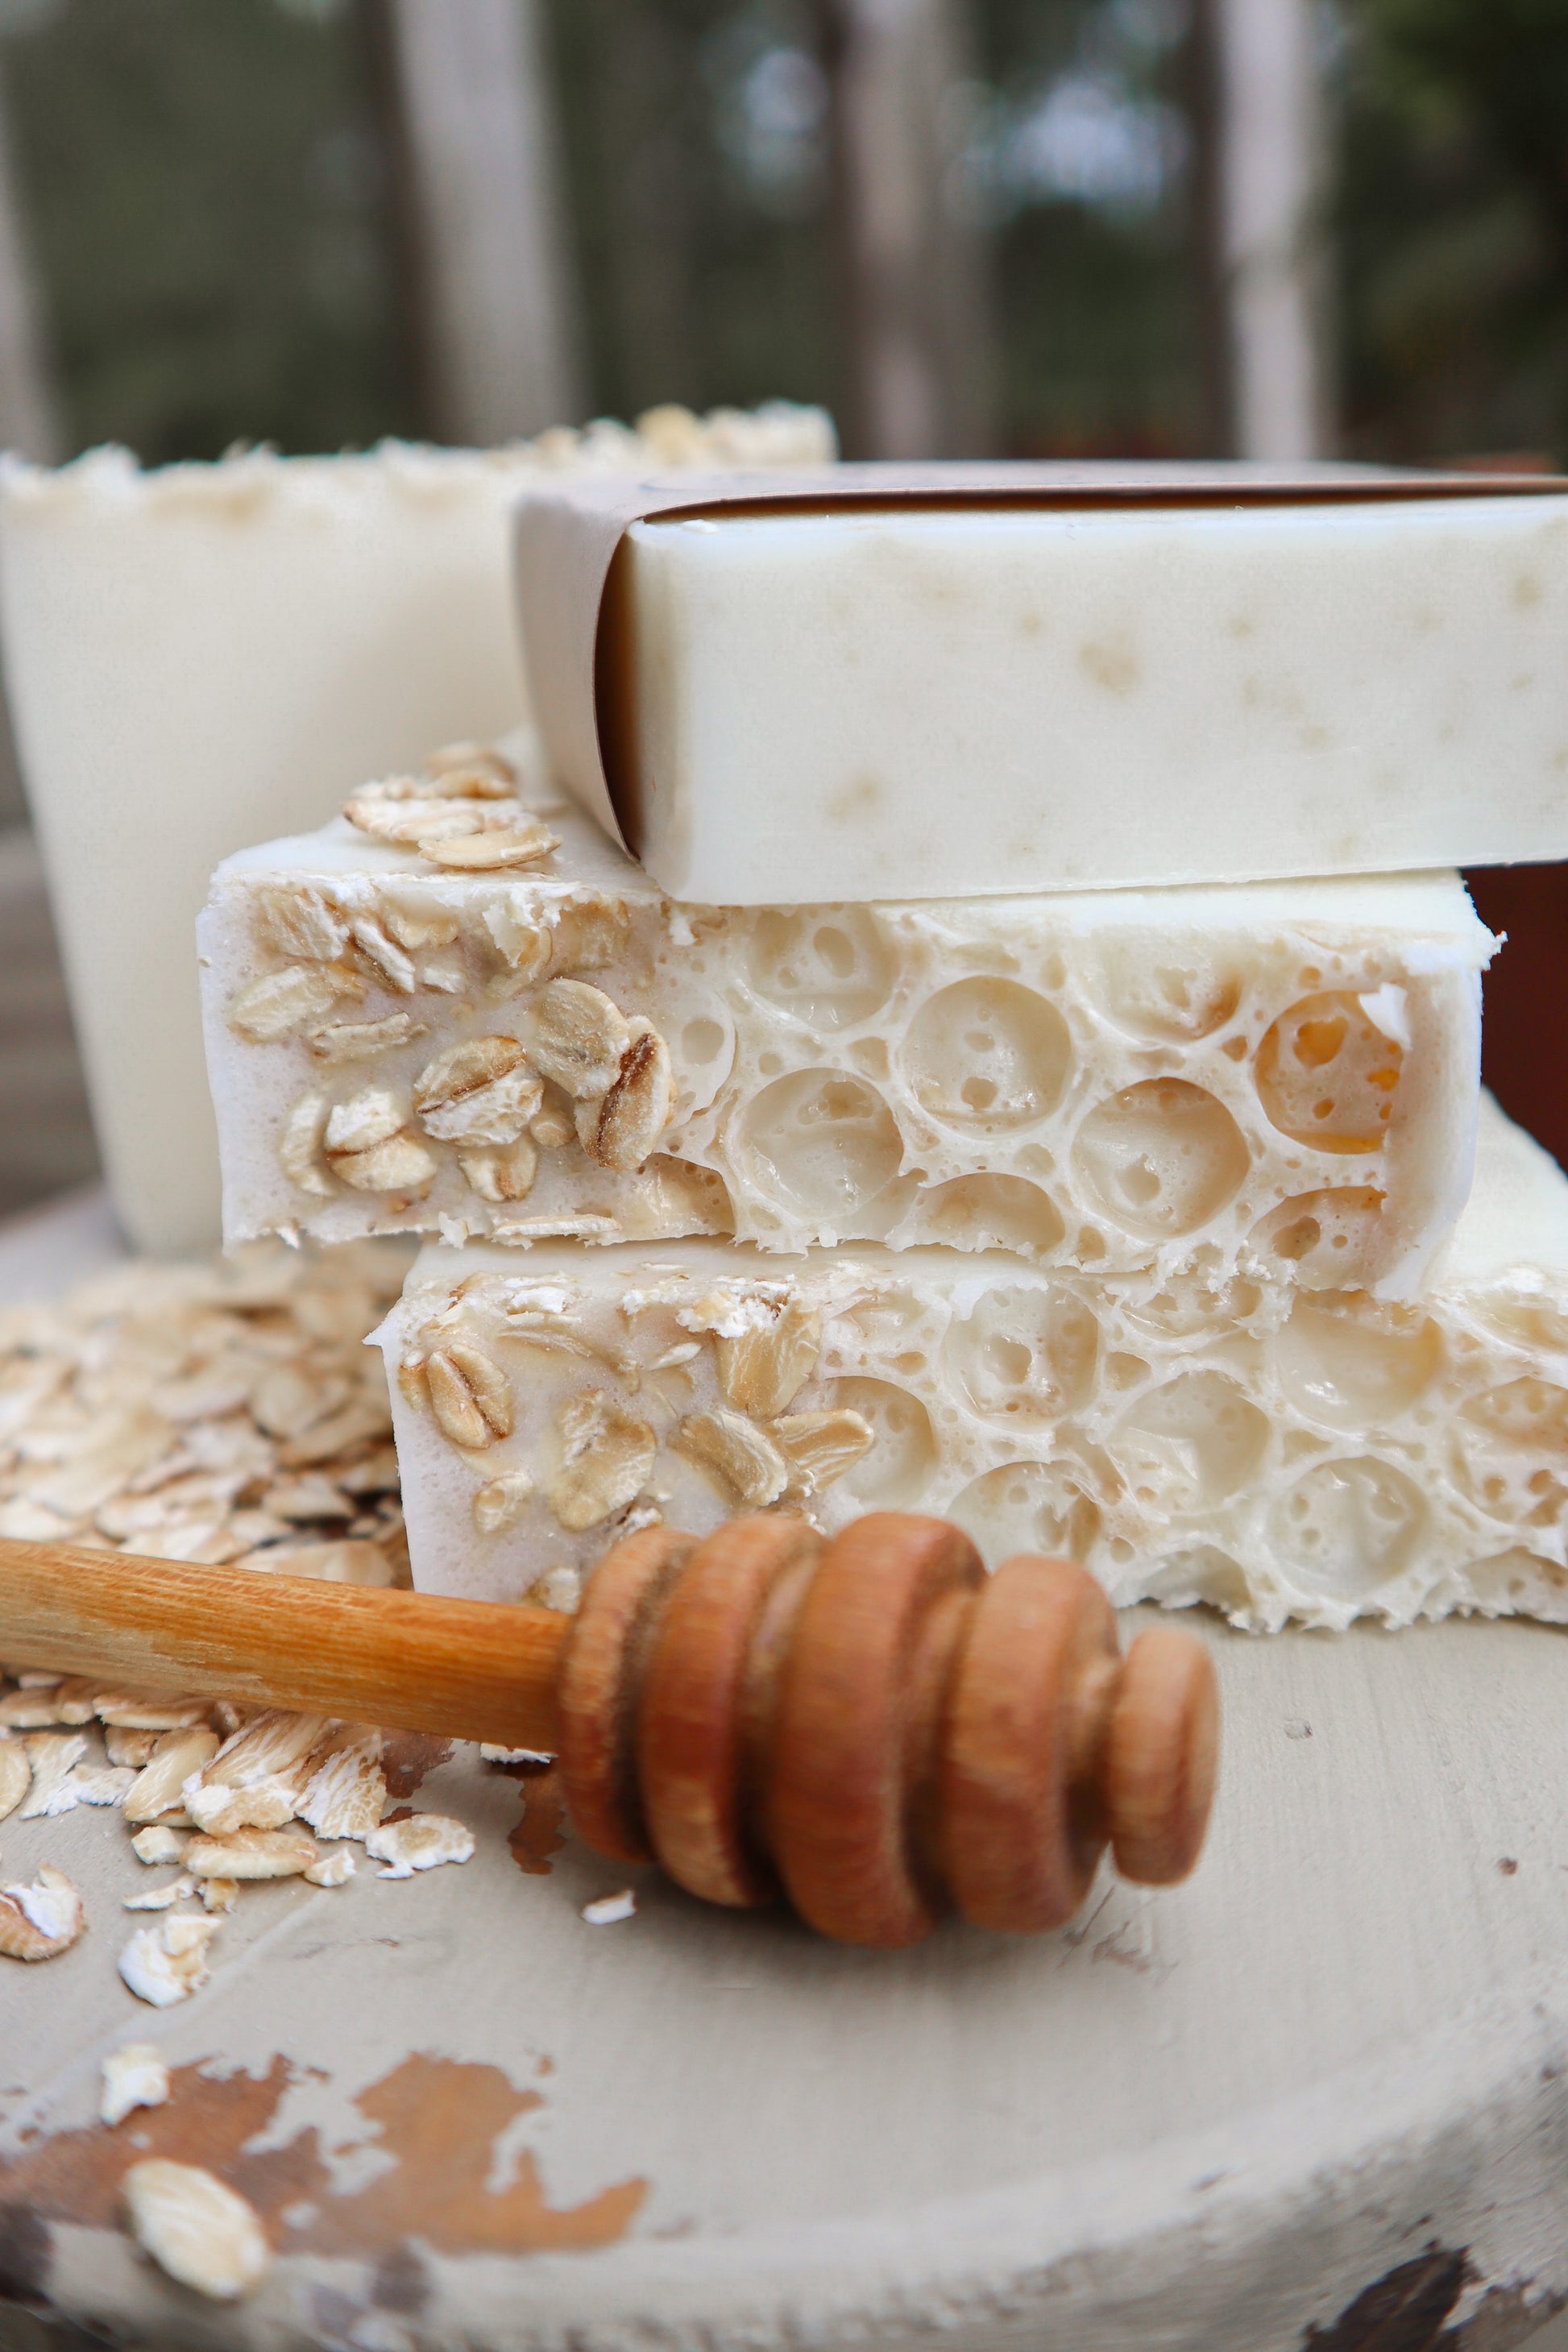 Honey & Oats Goat's Milk Soap — Blossom's Barn